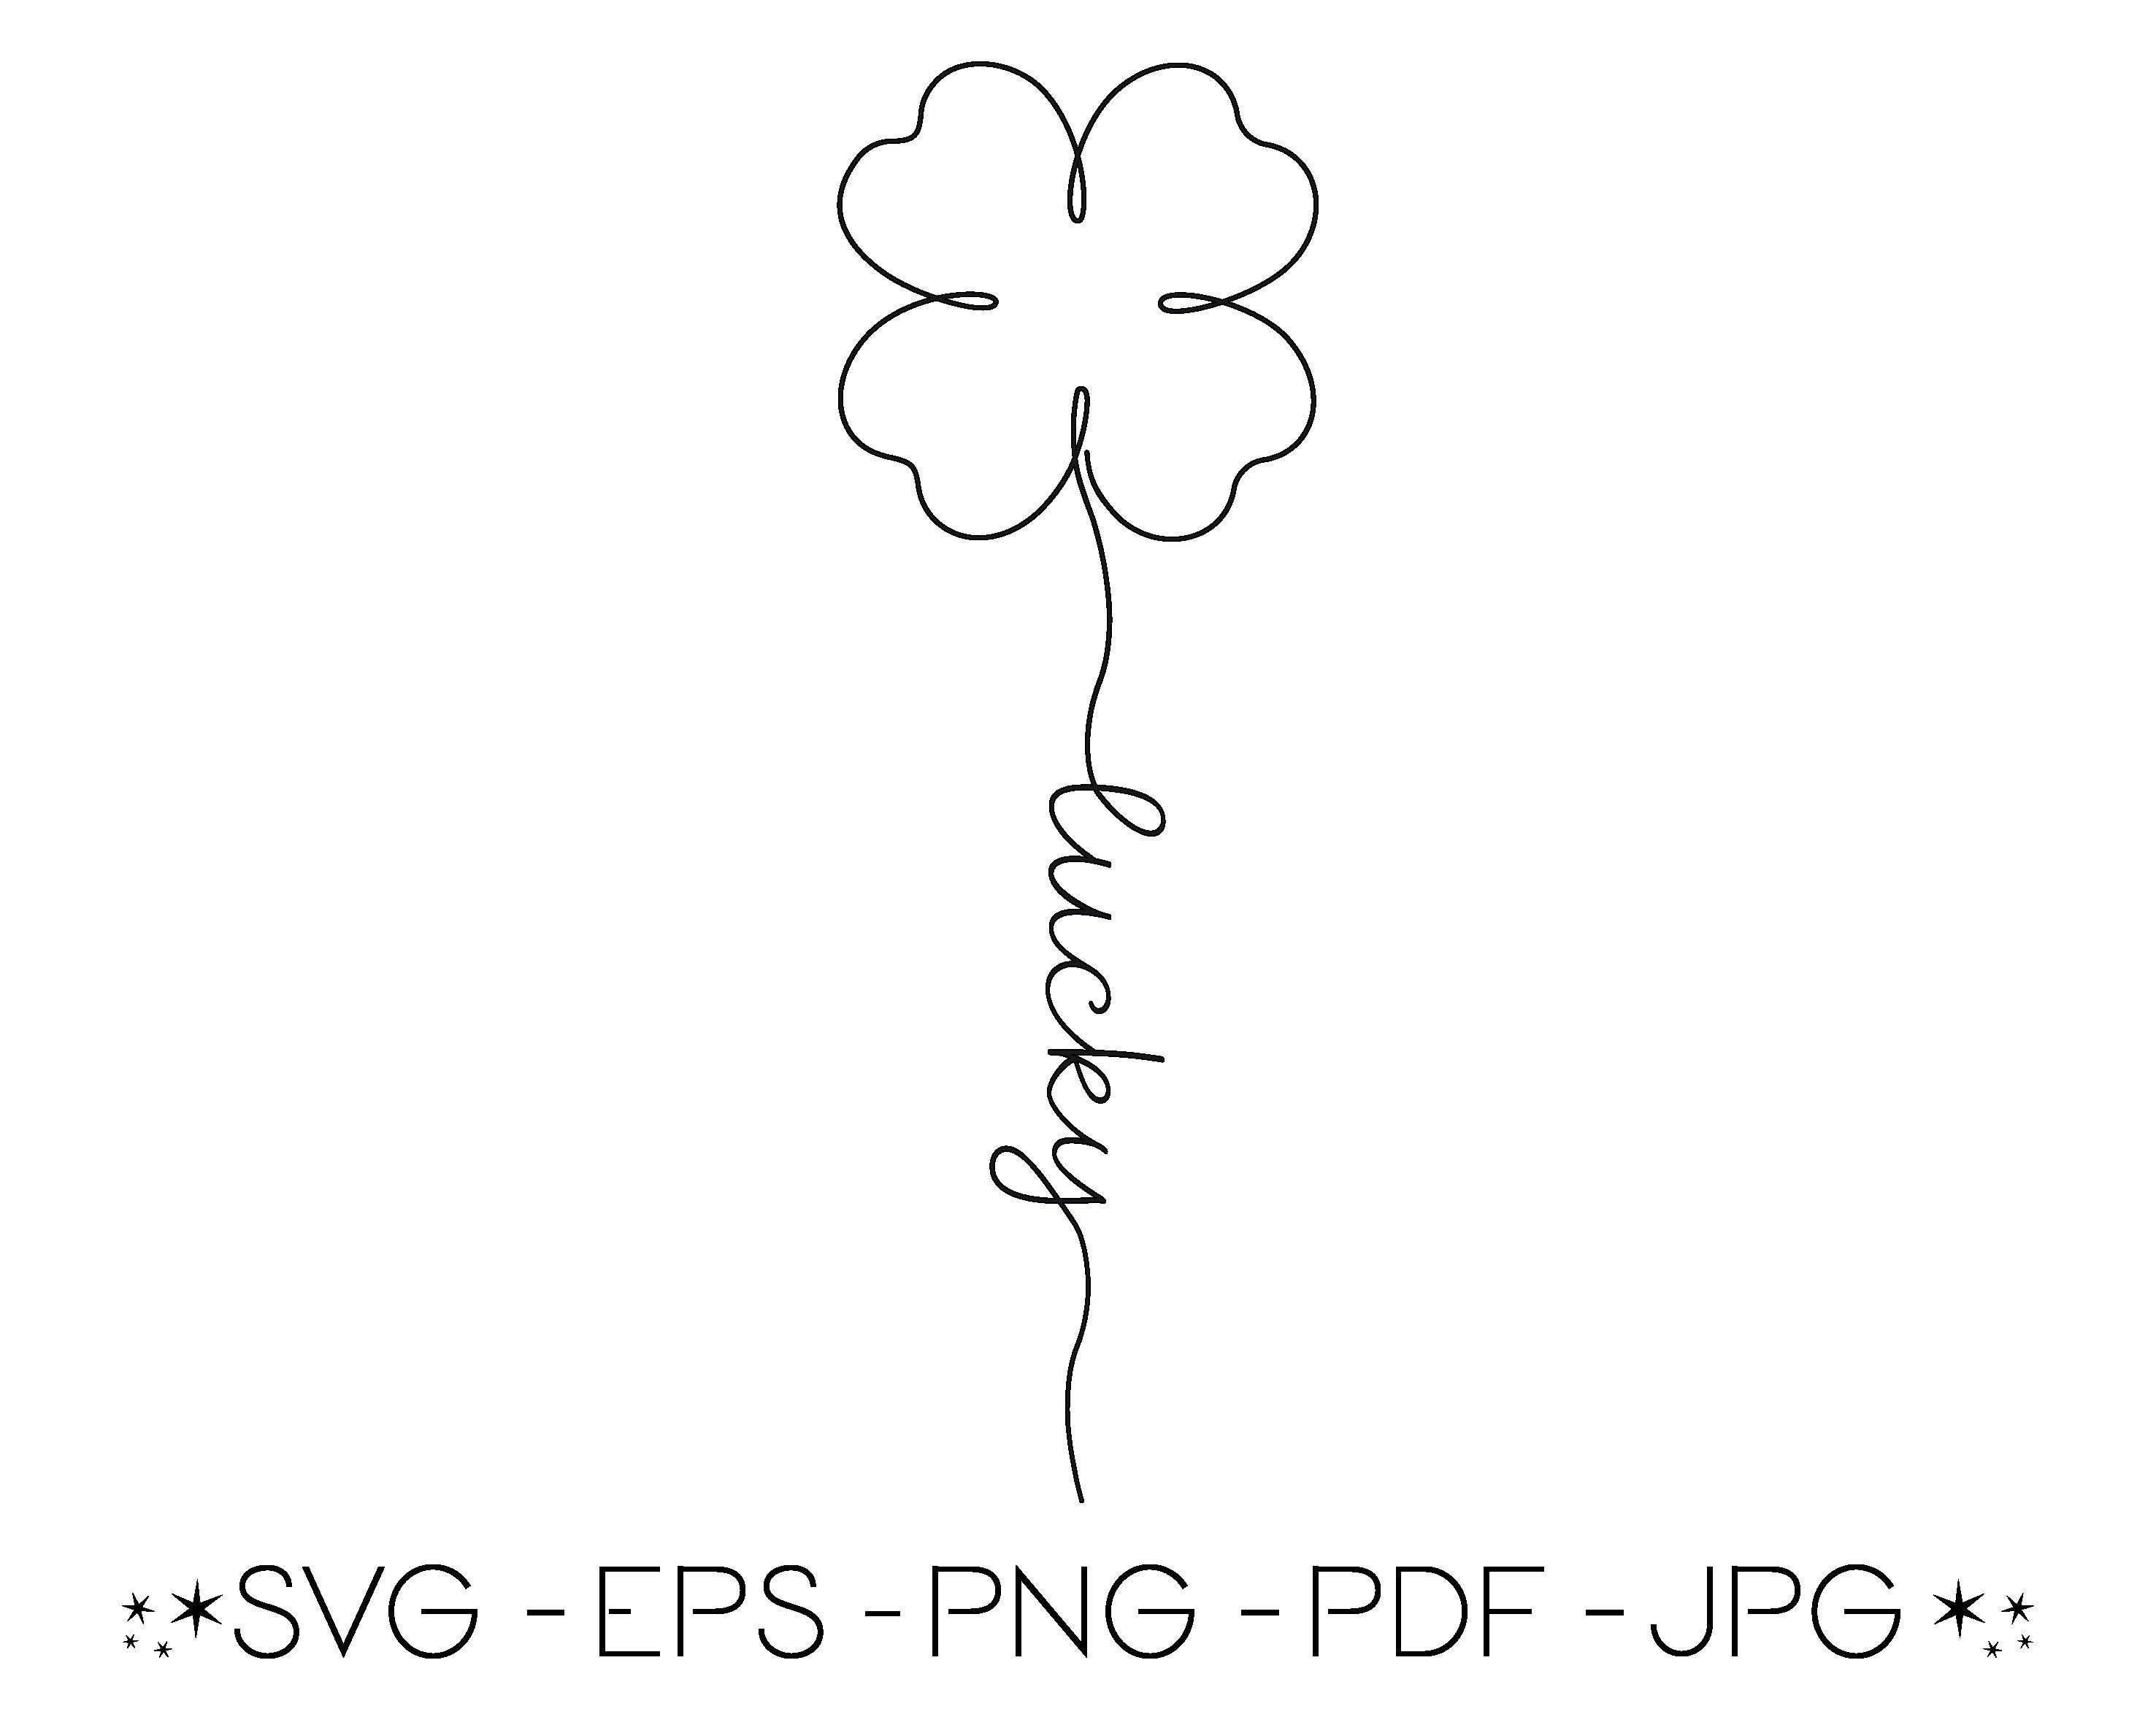 very lucky clover — matching pfp :3